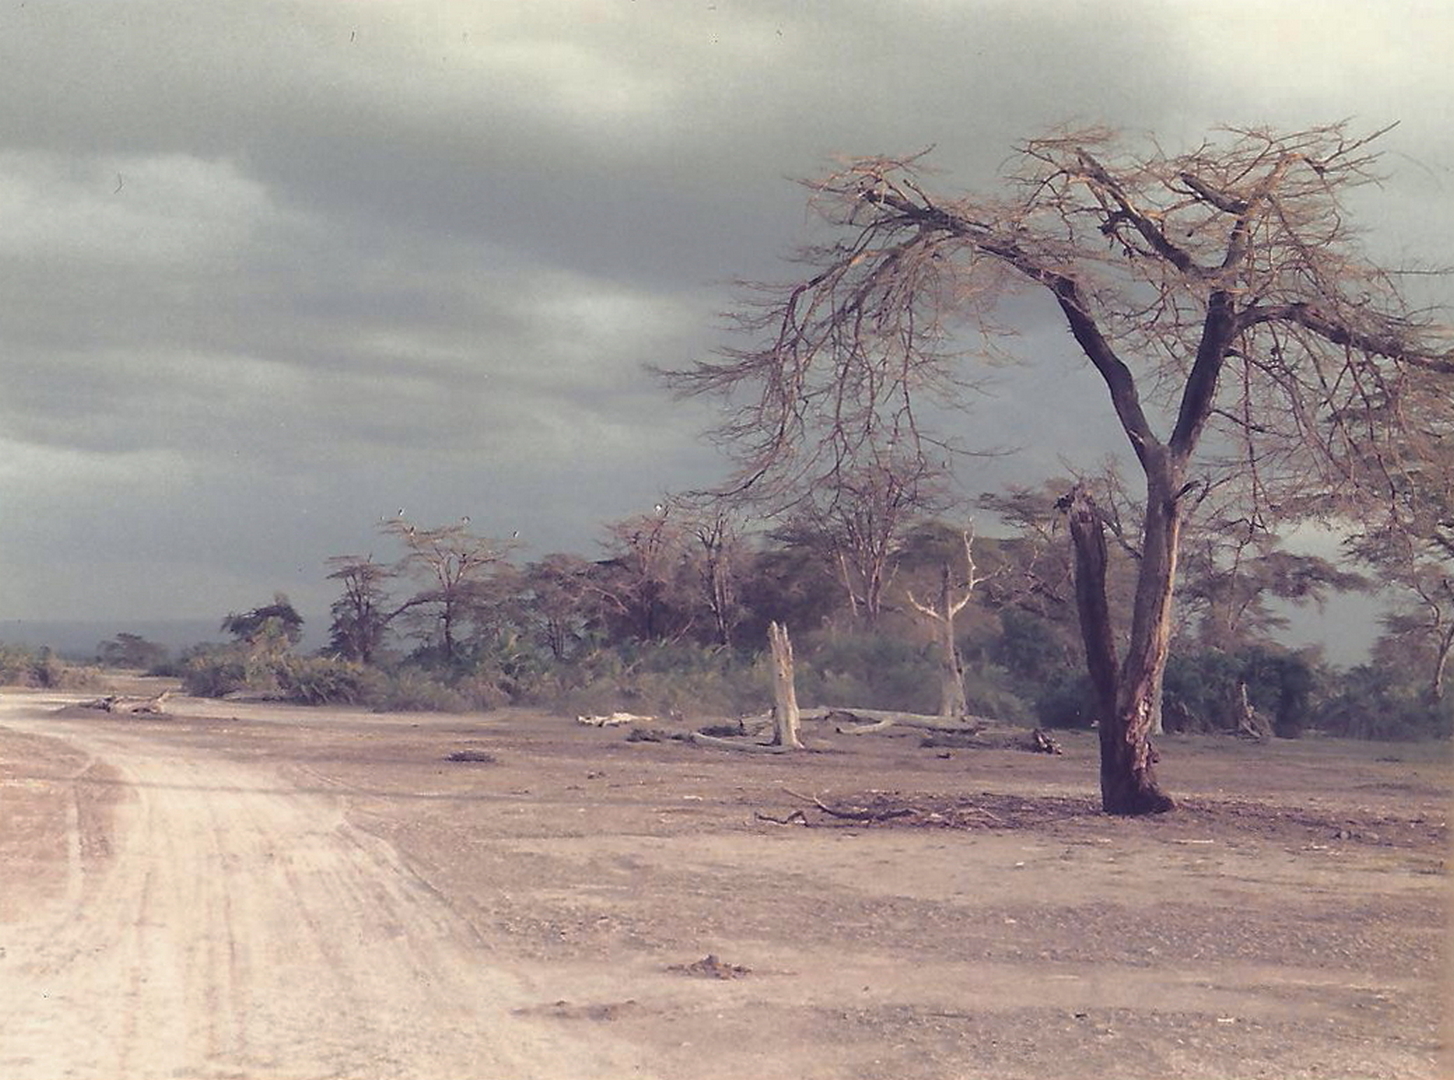 Kenya-Masai Mara...